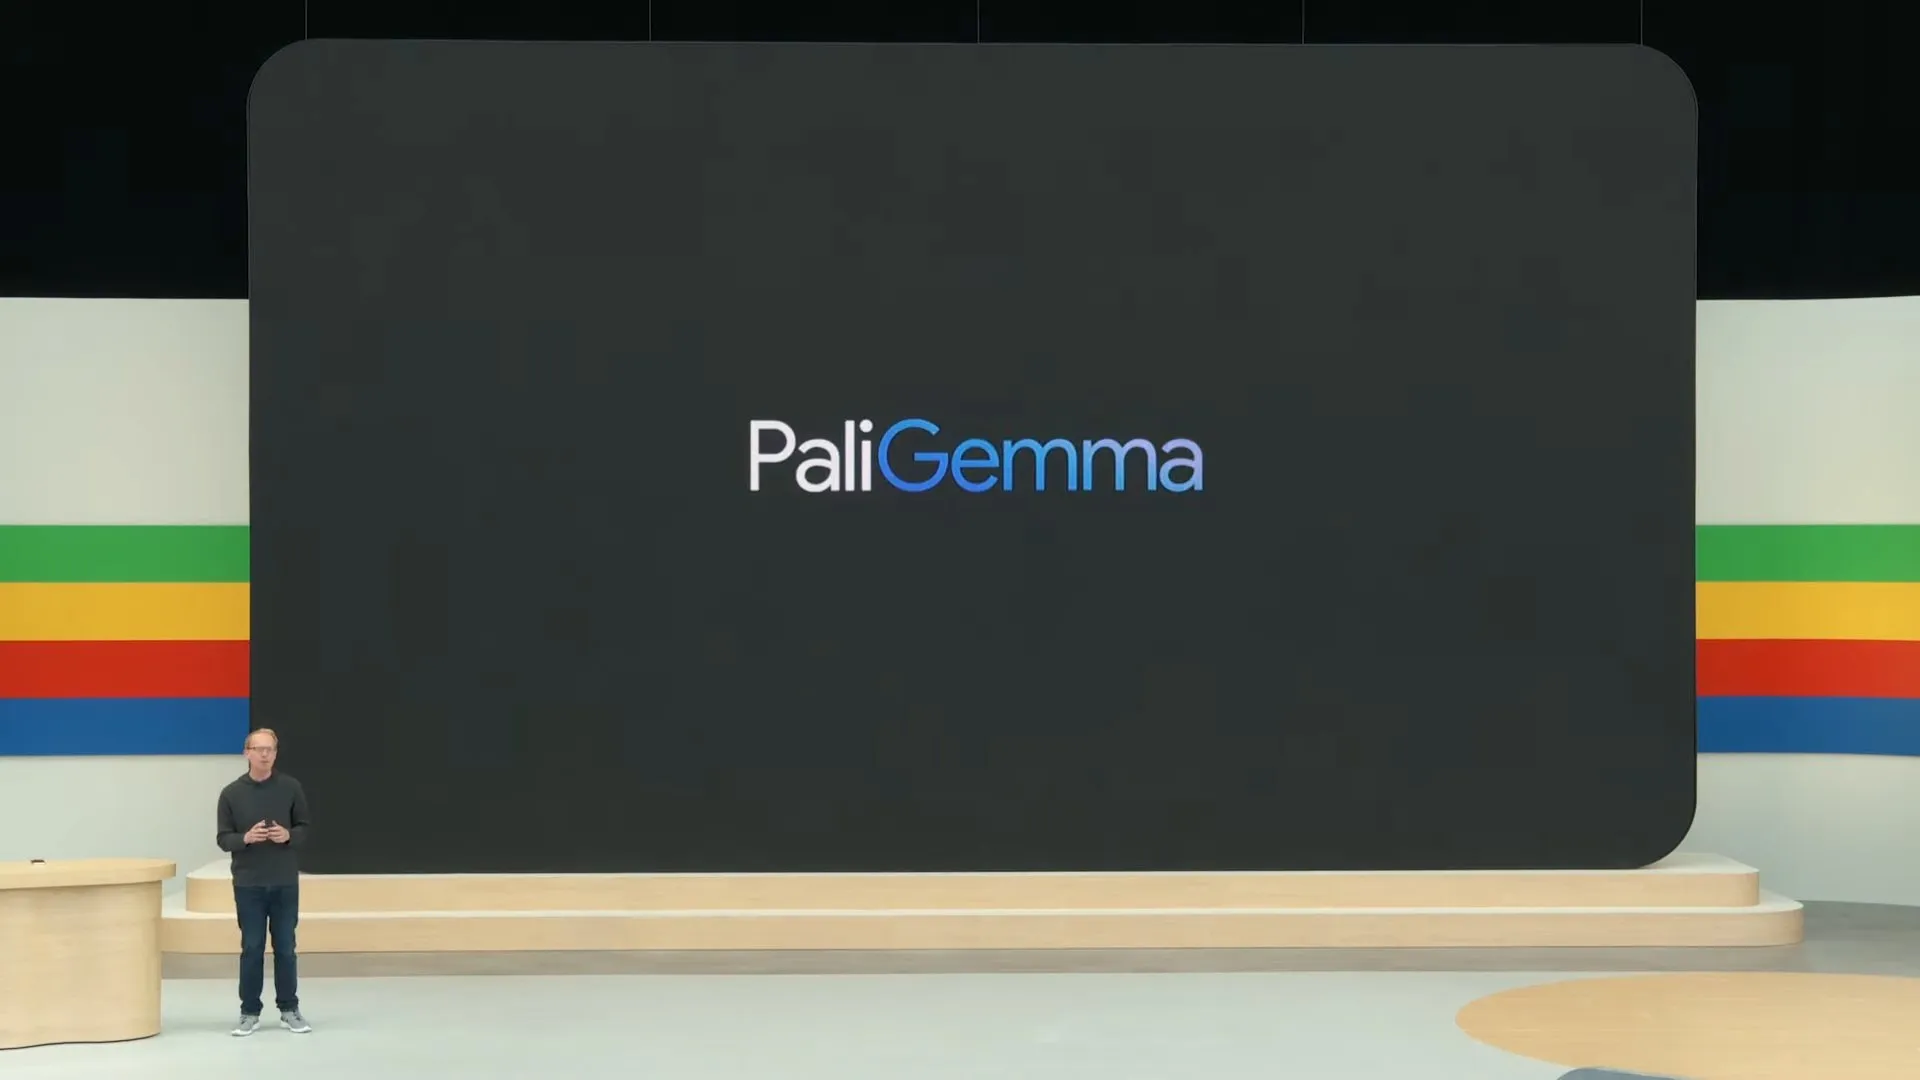 ステージの背後に「PaliGemma」と書かれたスライドが表示されている写真